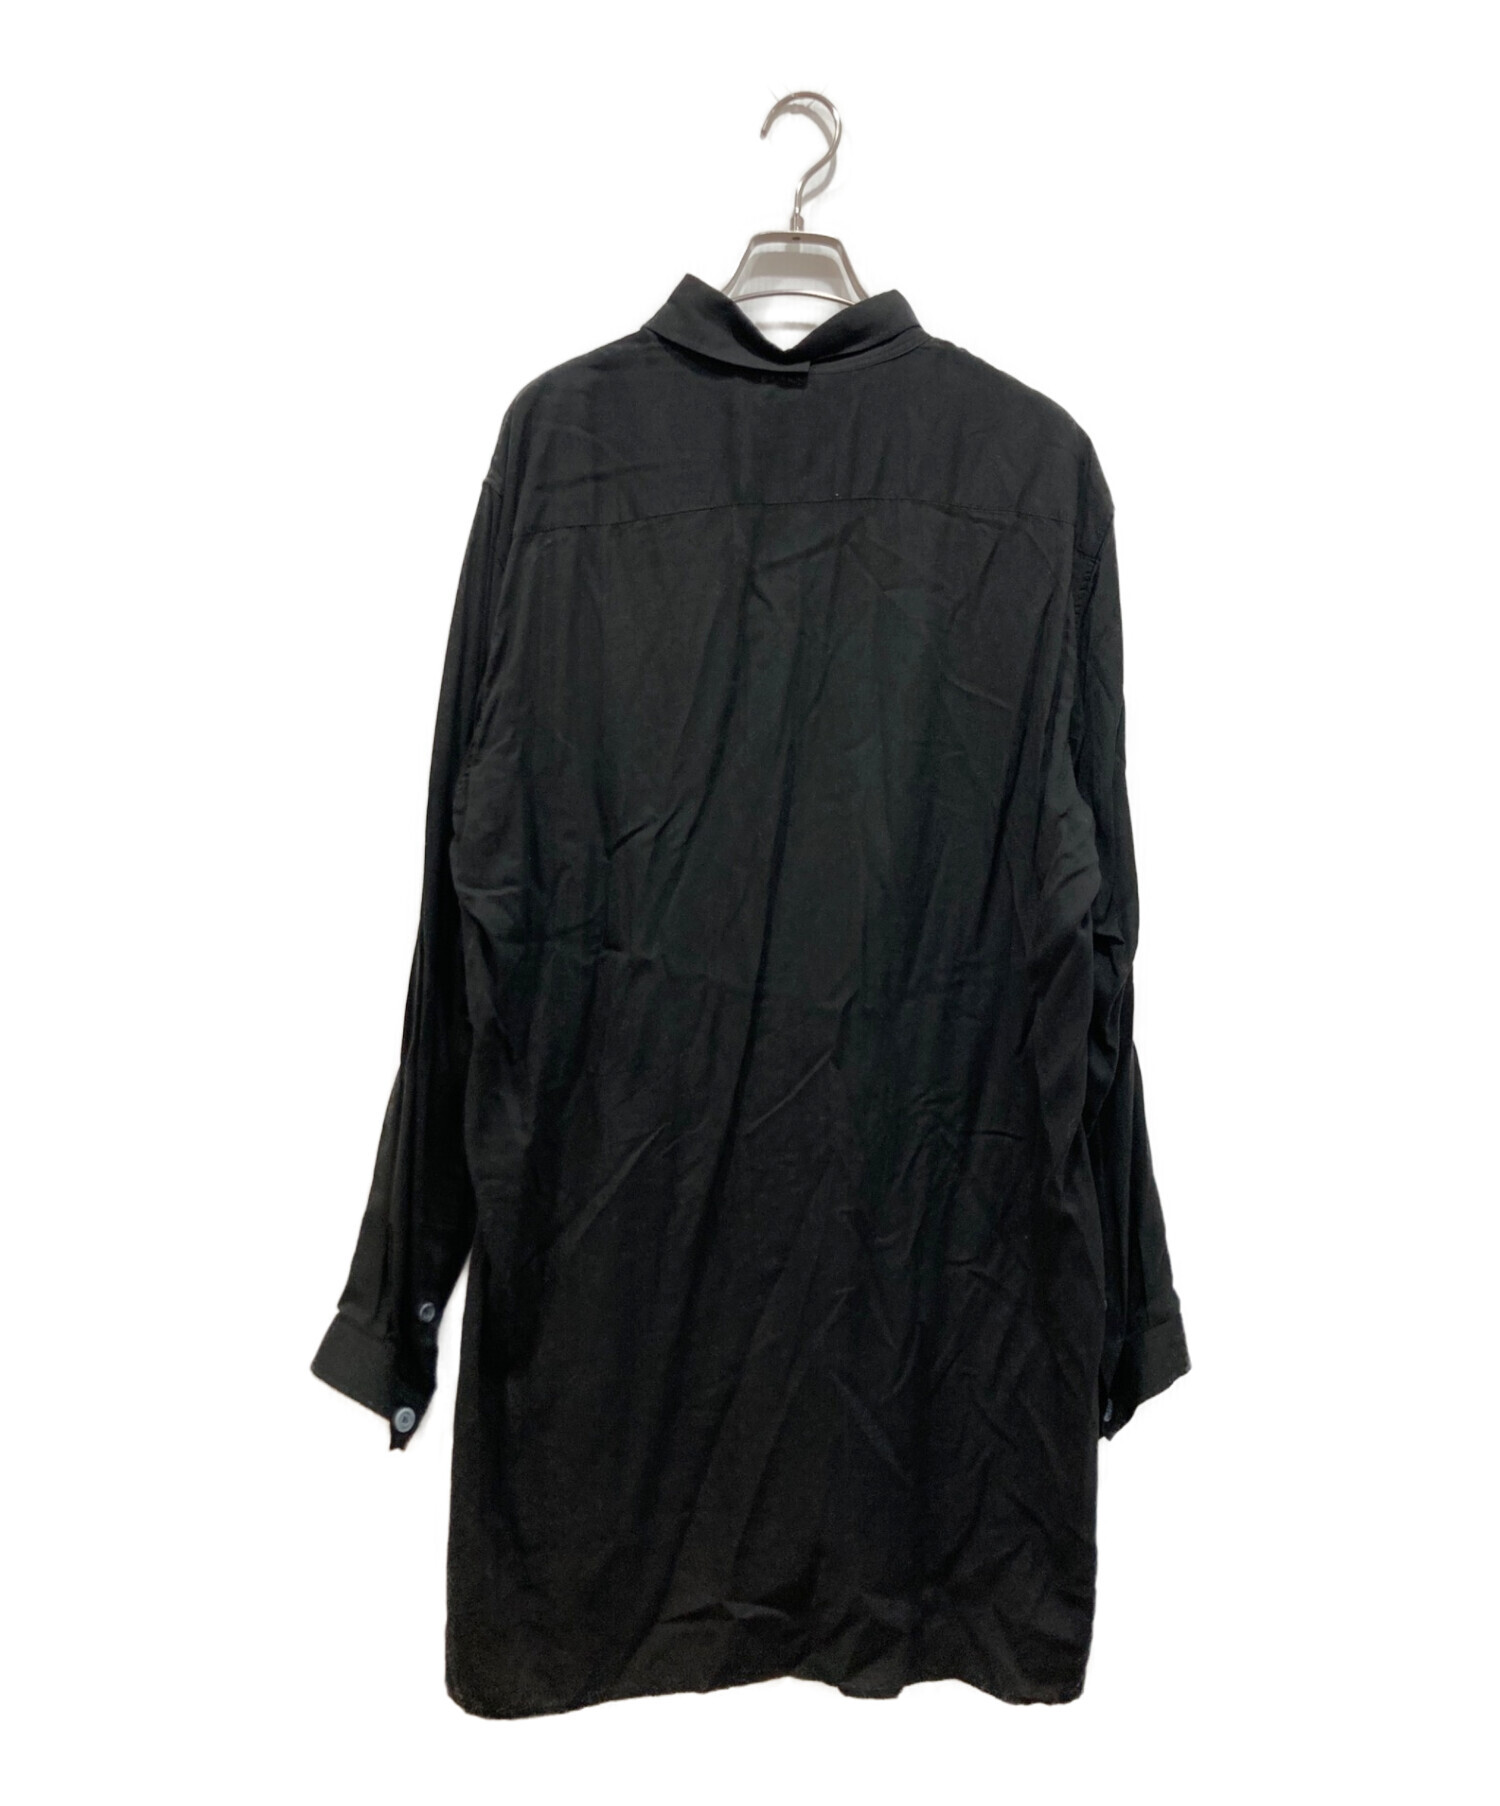 Yohji Yamamoto pour homme (ヨウジヤマモト プールオム) ロングデザインシャツ ブラック サイズ:2